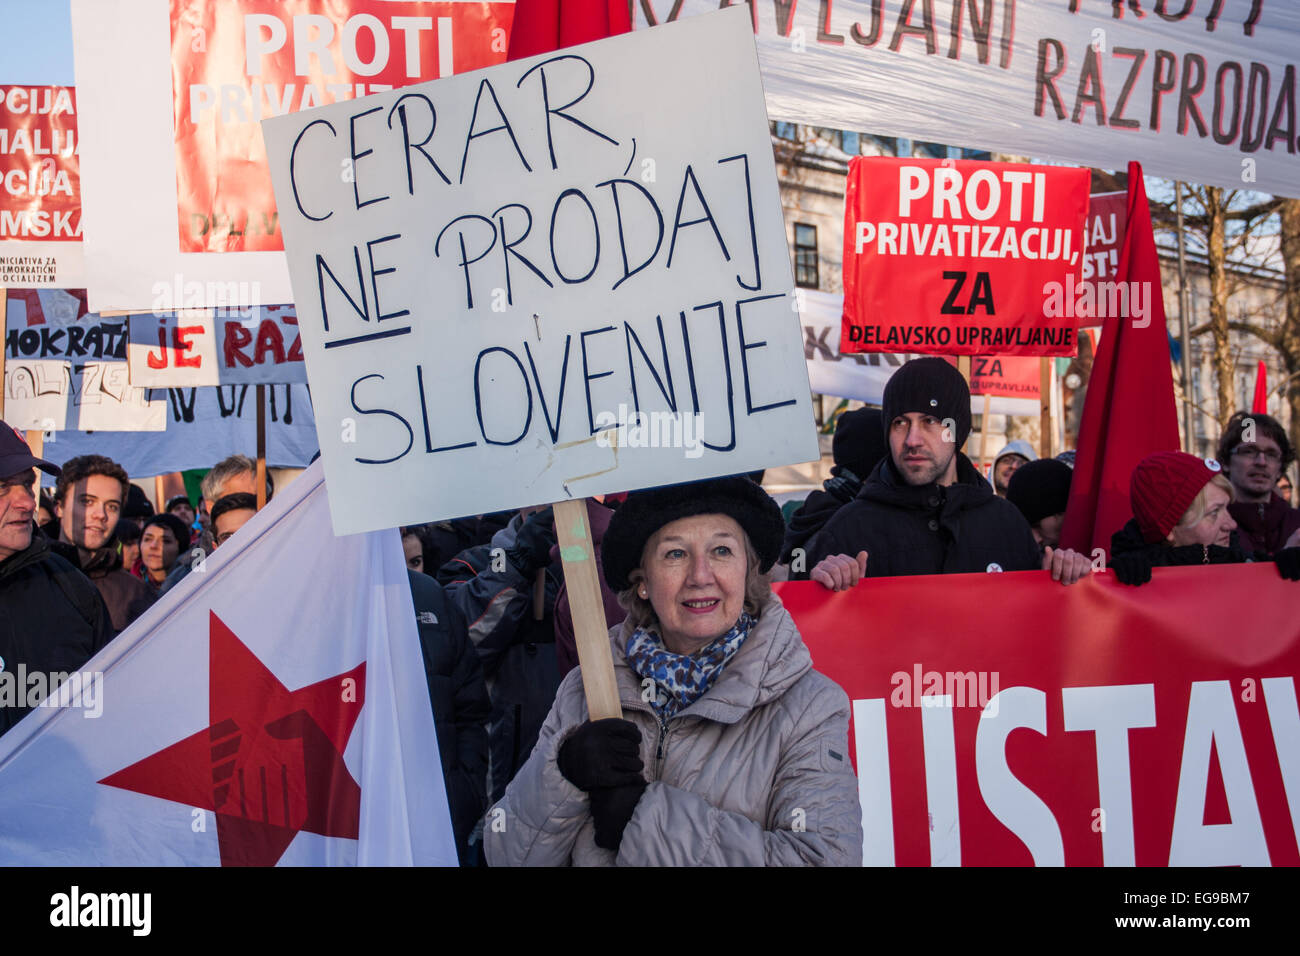 Protest against privatization in Ljubljana, Slovenia on 7.2.2015 Stock Photo